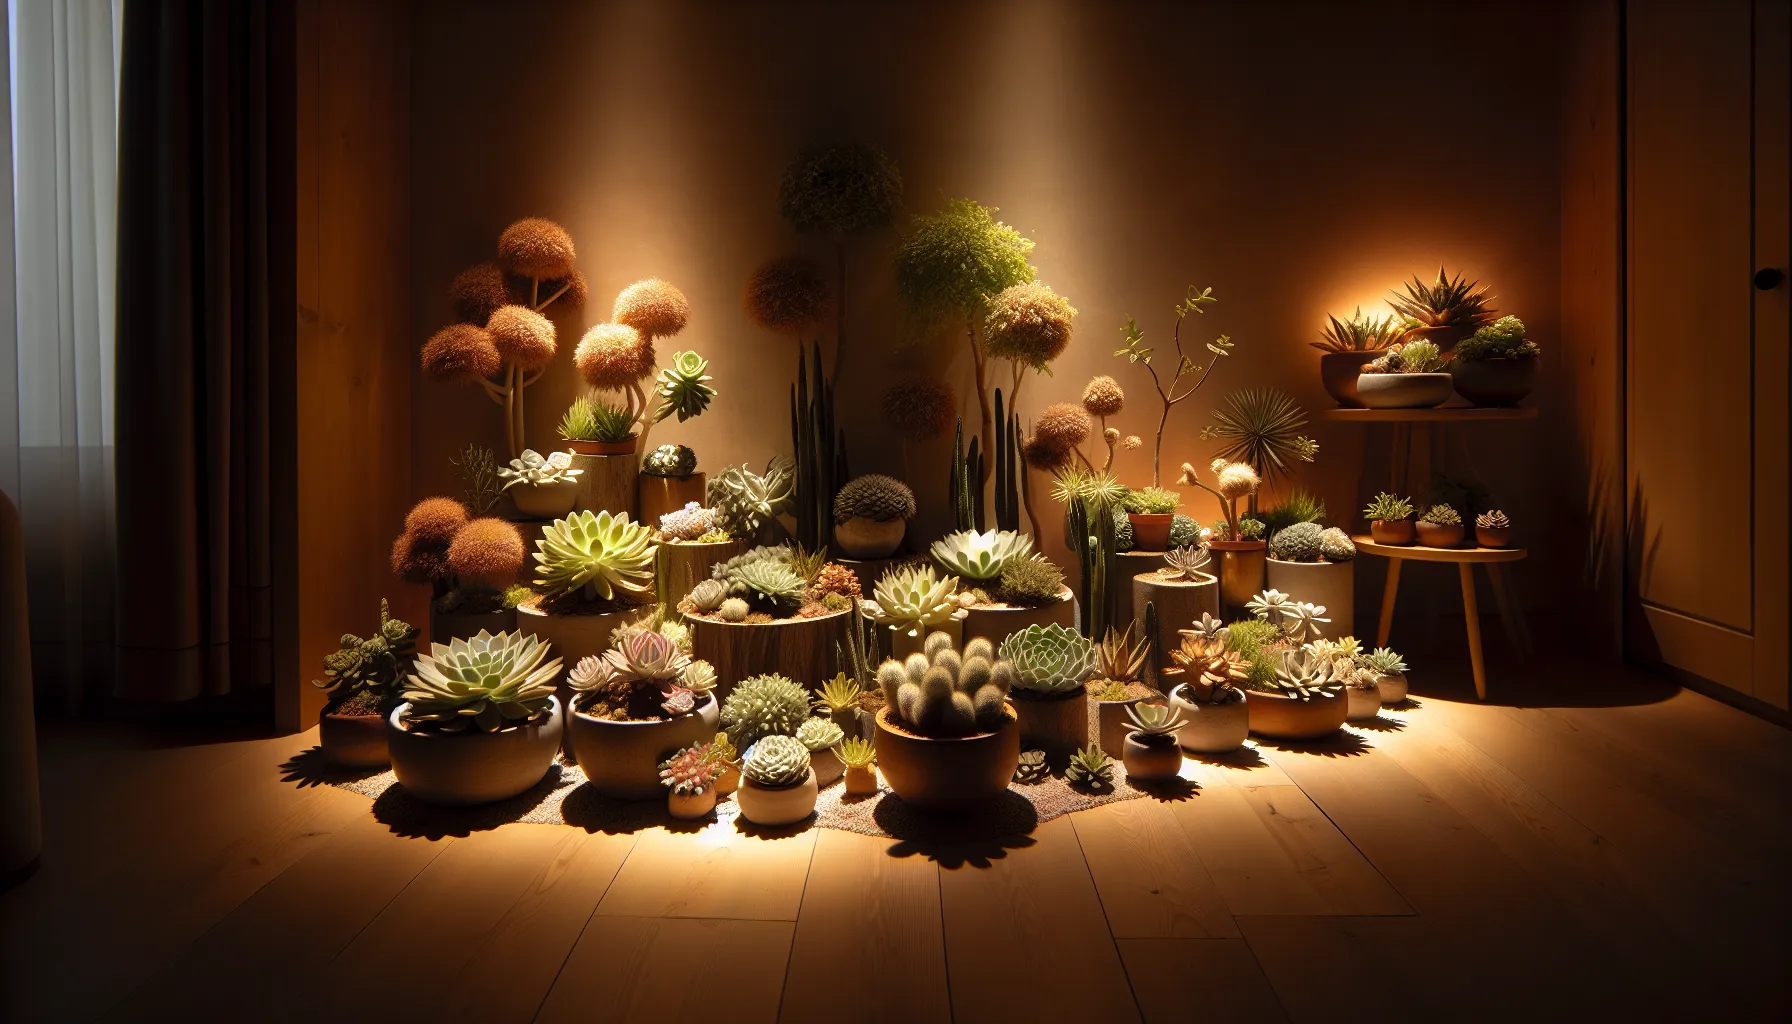 Foto de diferentes plantas suculentas de interior decorando un ambiente acogedor y bien iluminado.